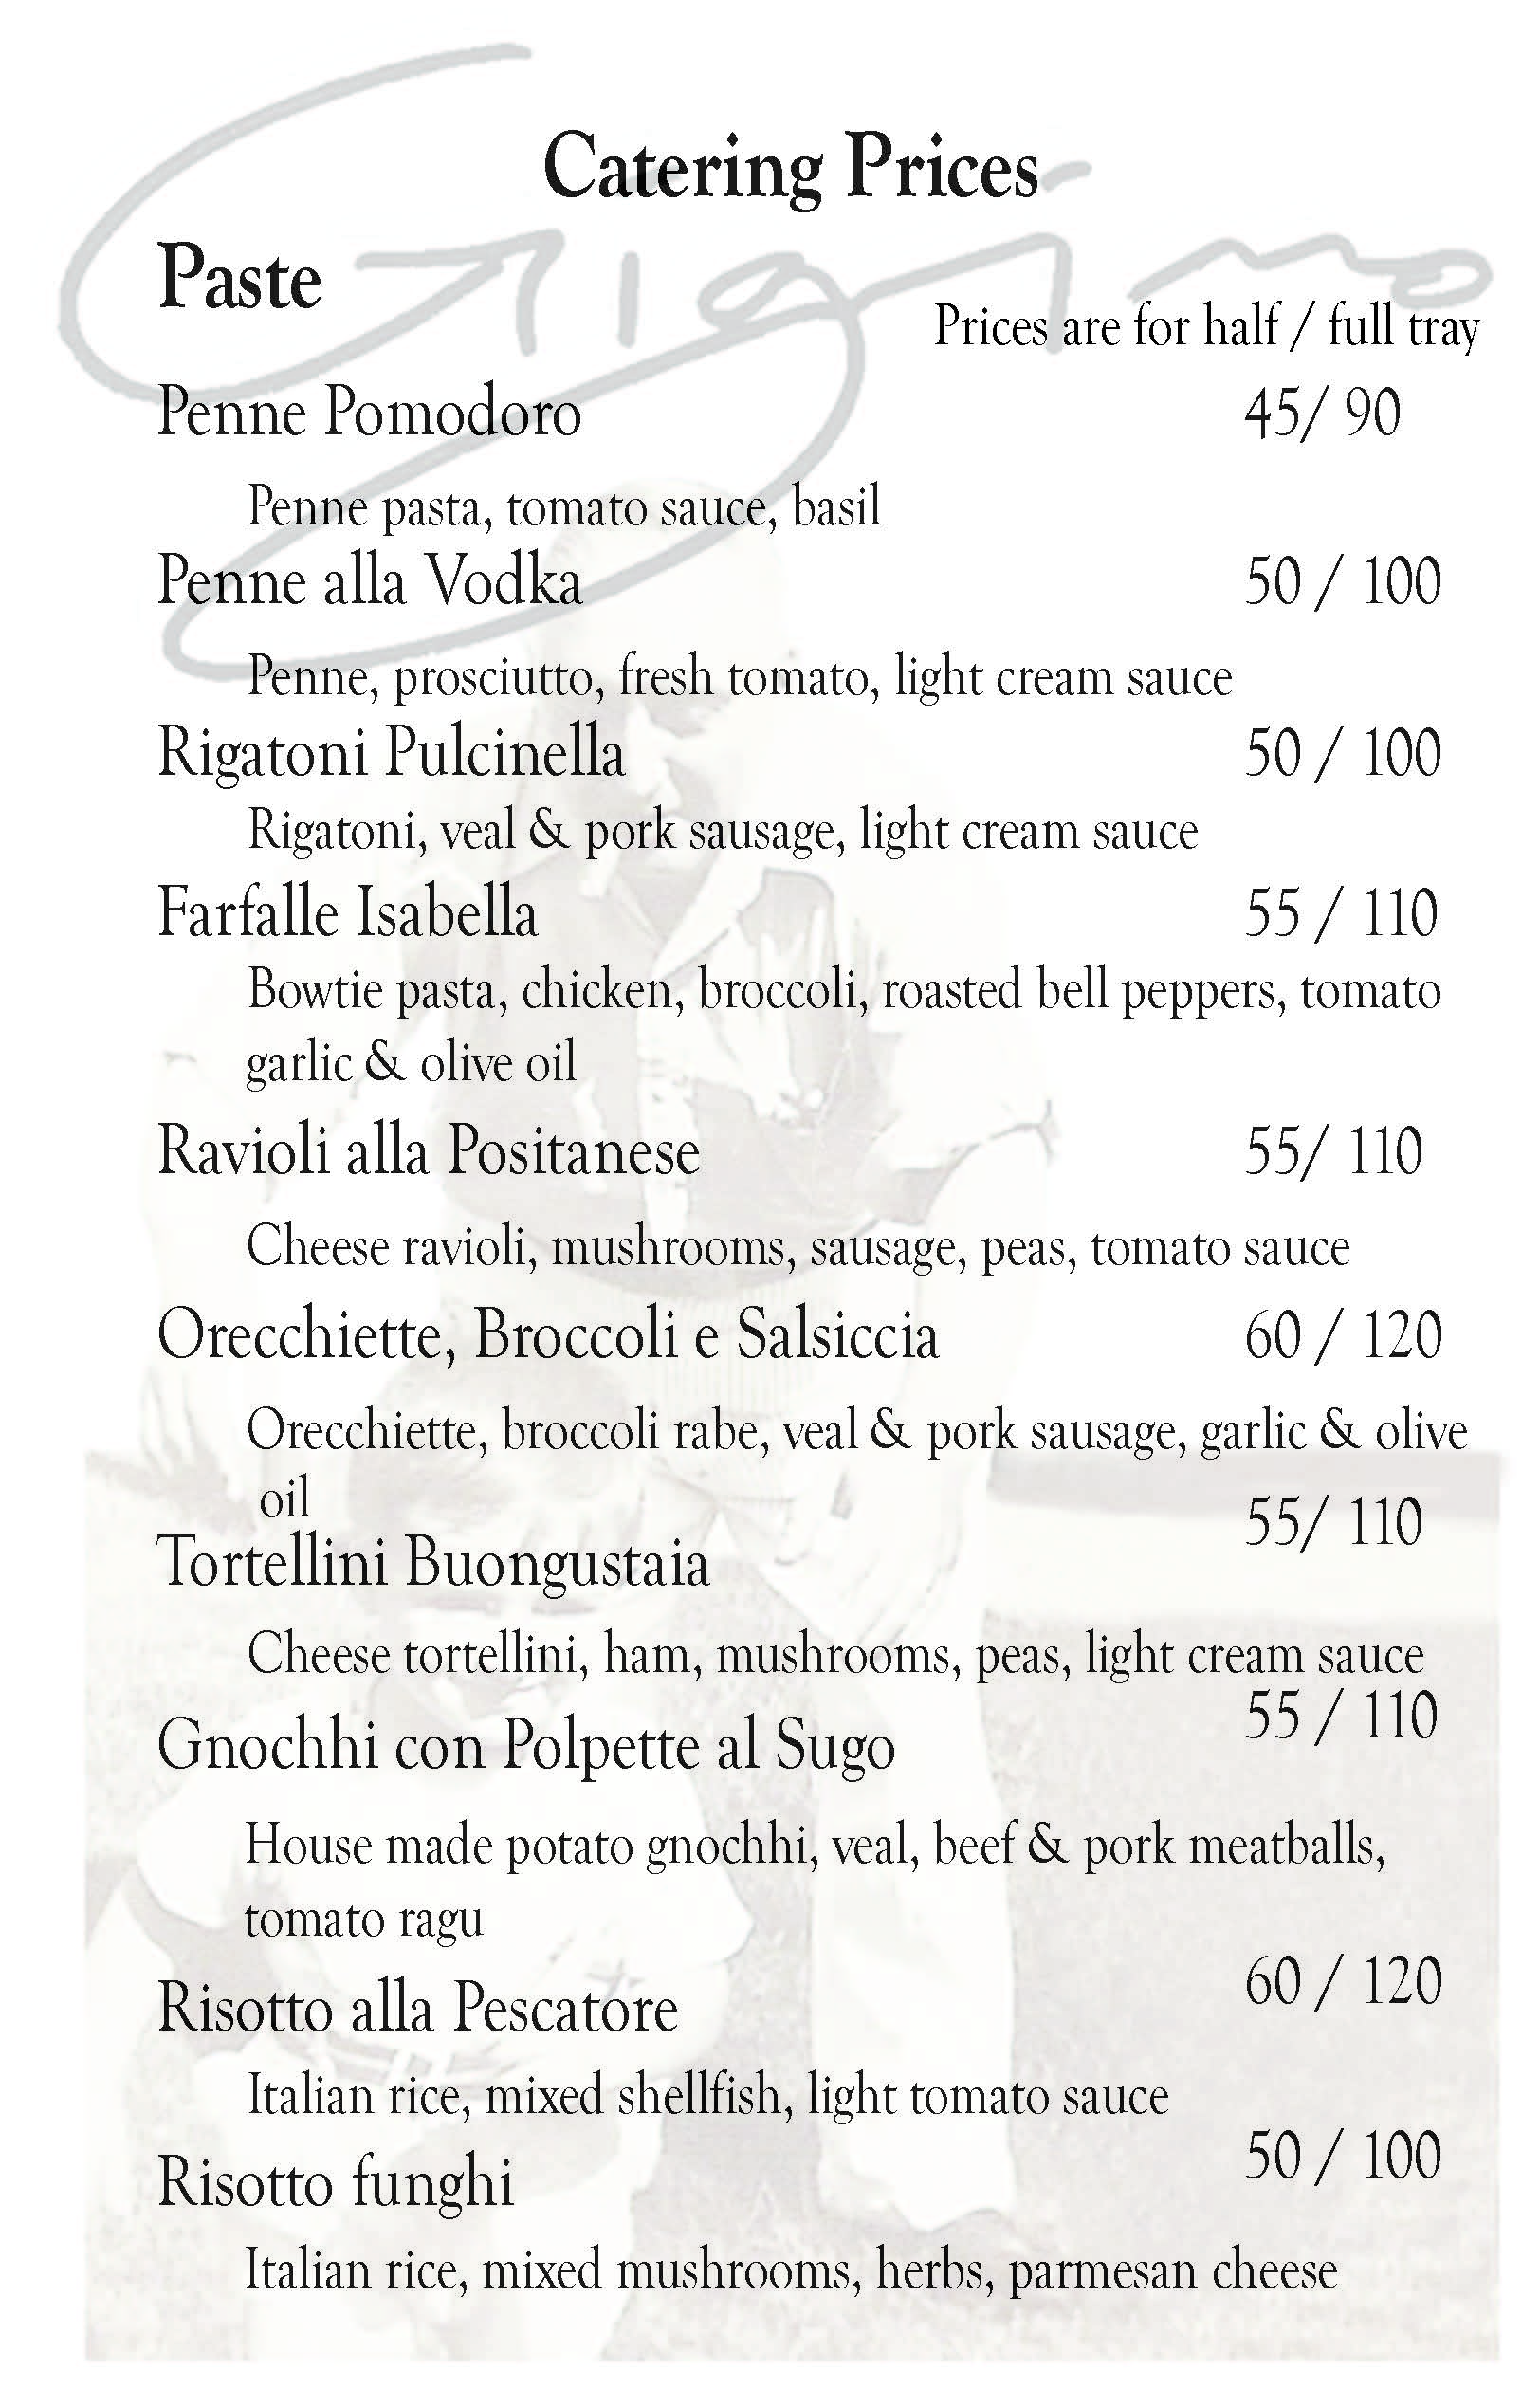 Gigino Trattoria Catering Menu 2015_Page_2